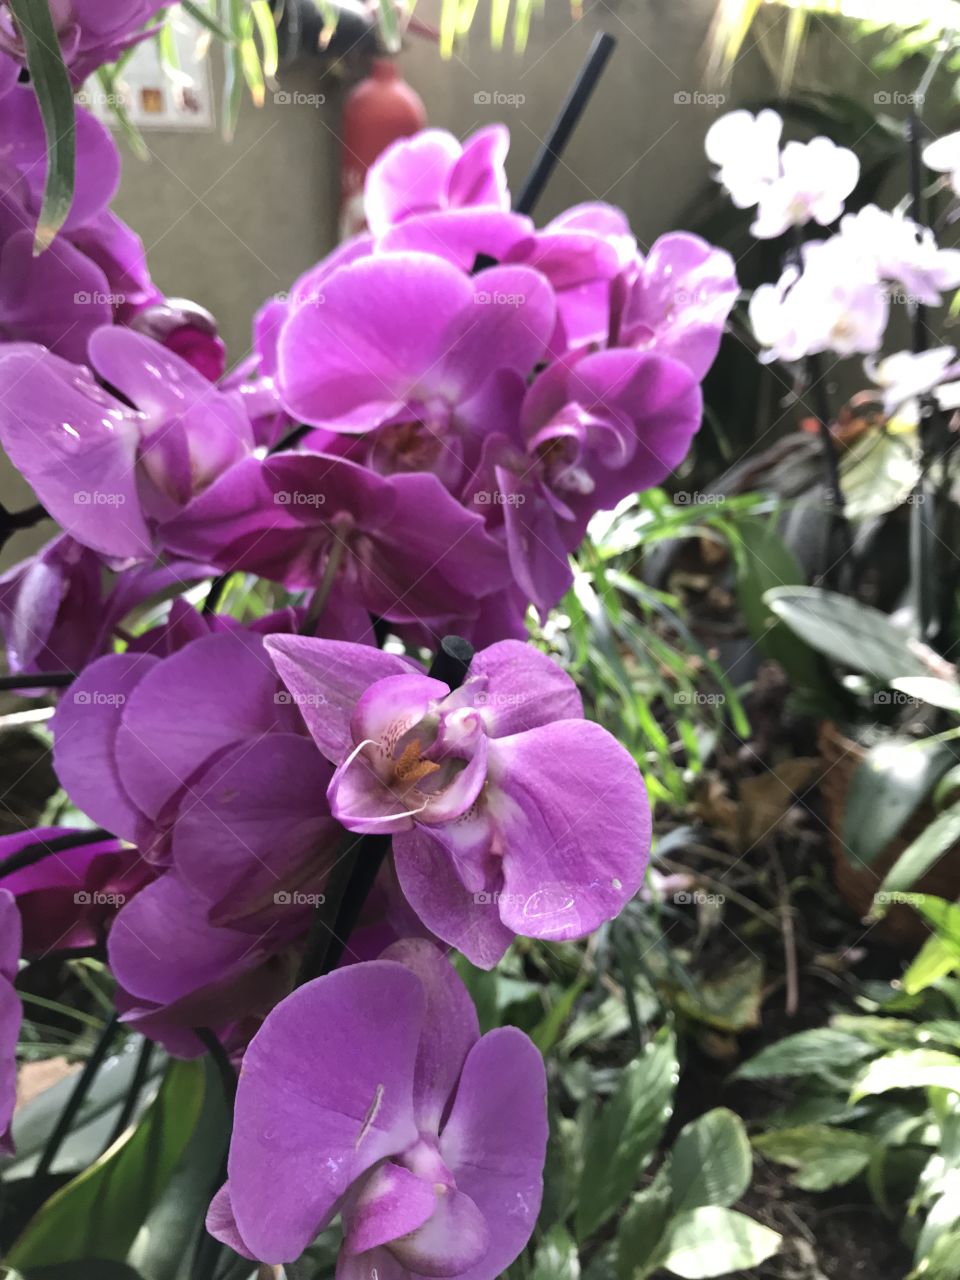 Flowers in purple